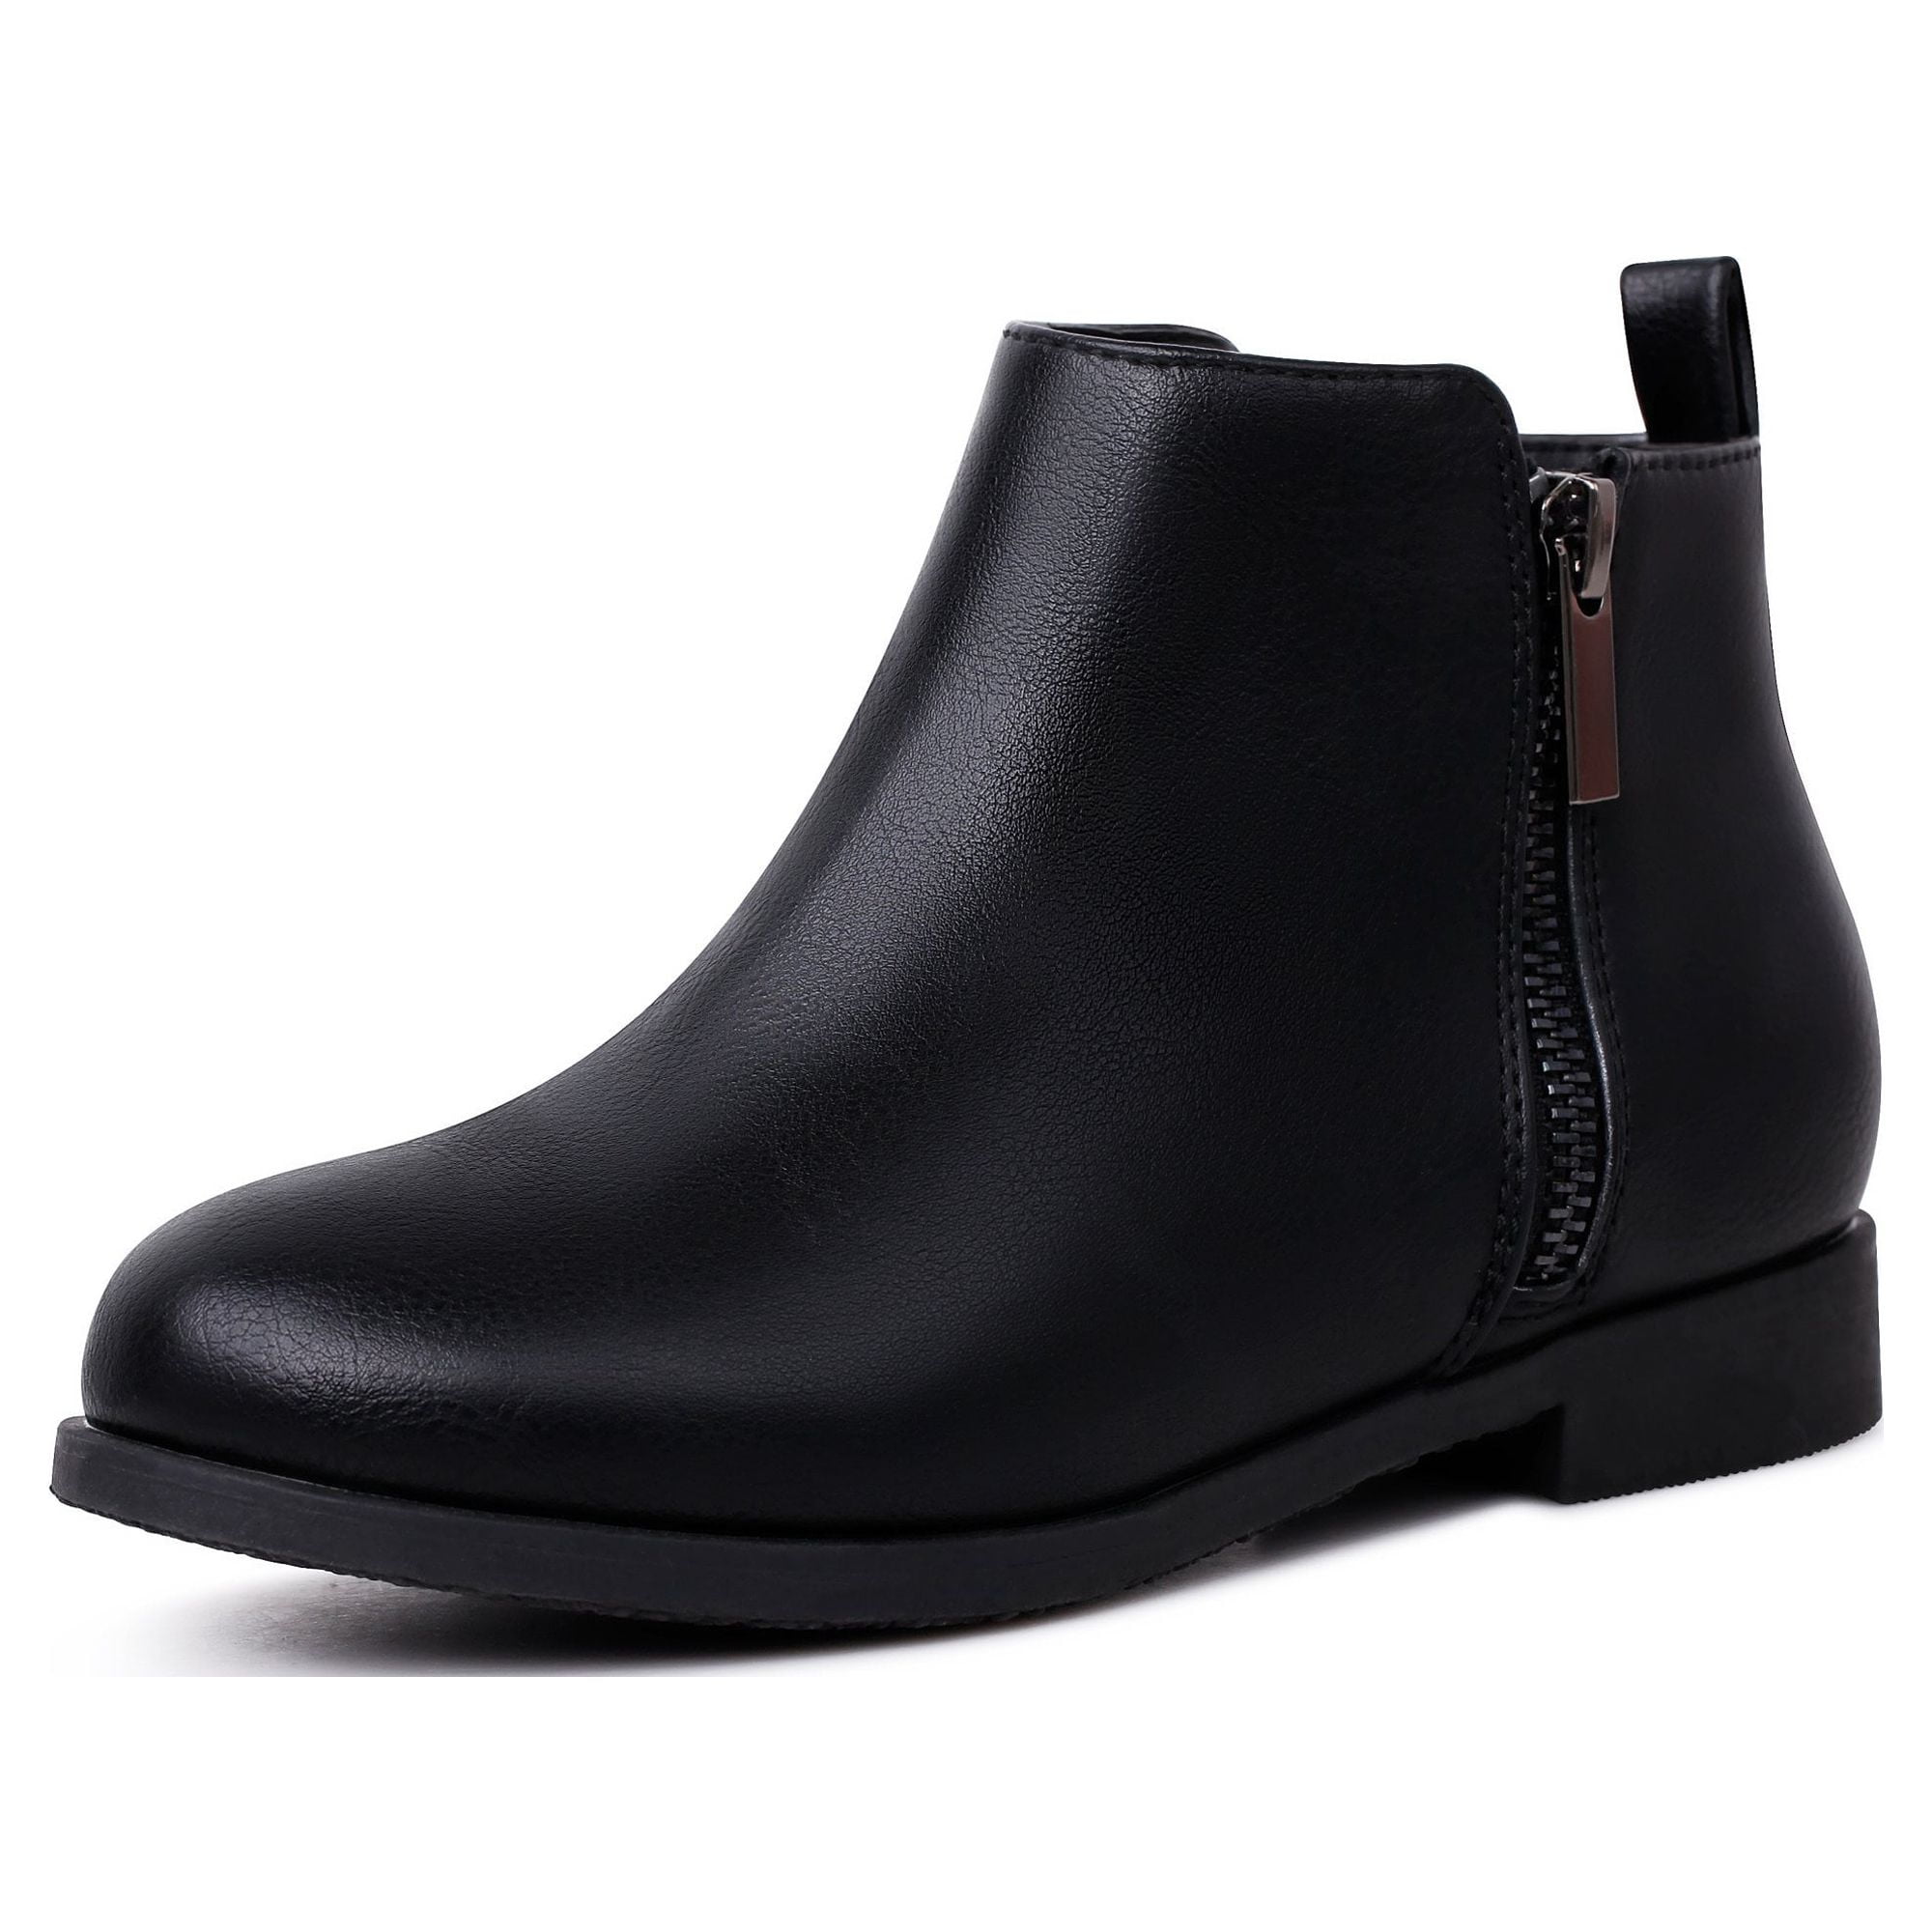 Buy Shoetopia Black Suede High Top Block Heeled Boots for Girls online-thanhphatduhoc.com.vn